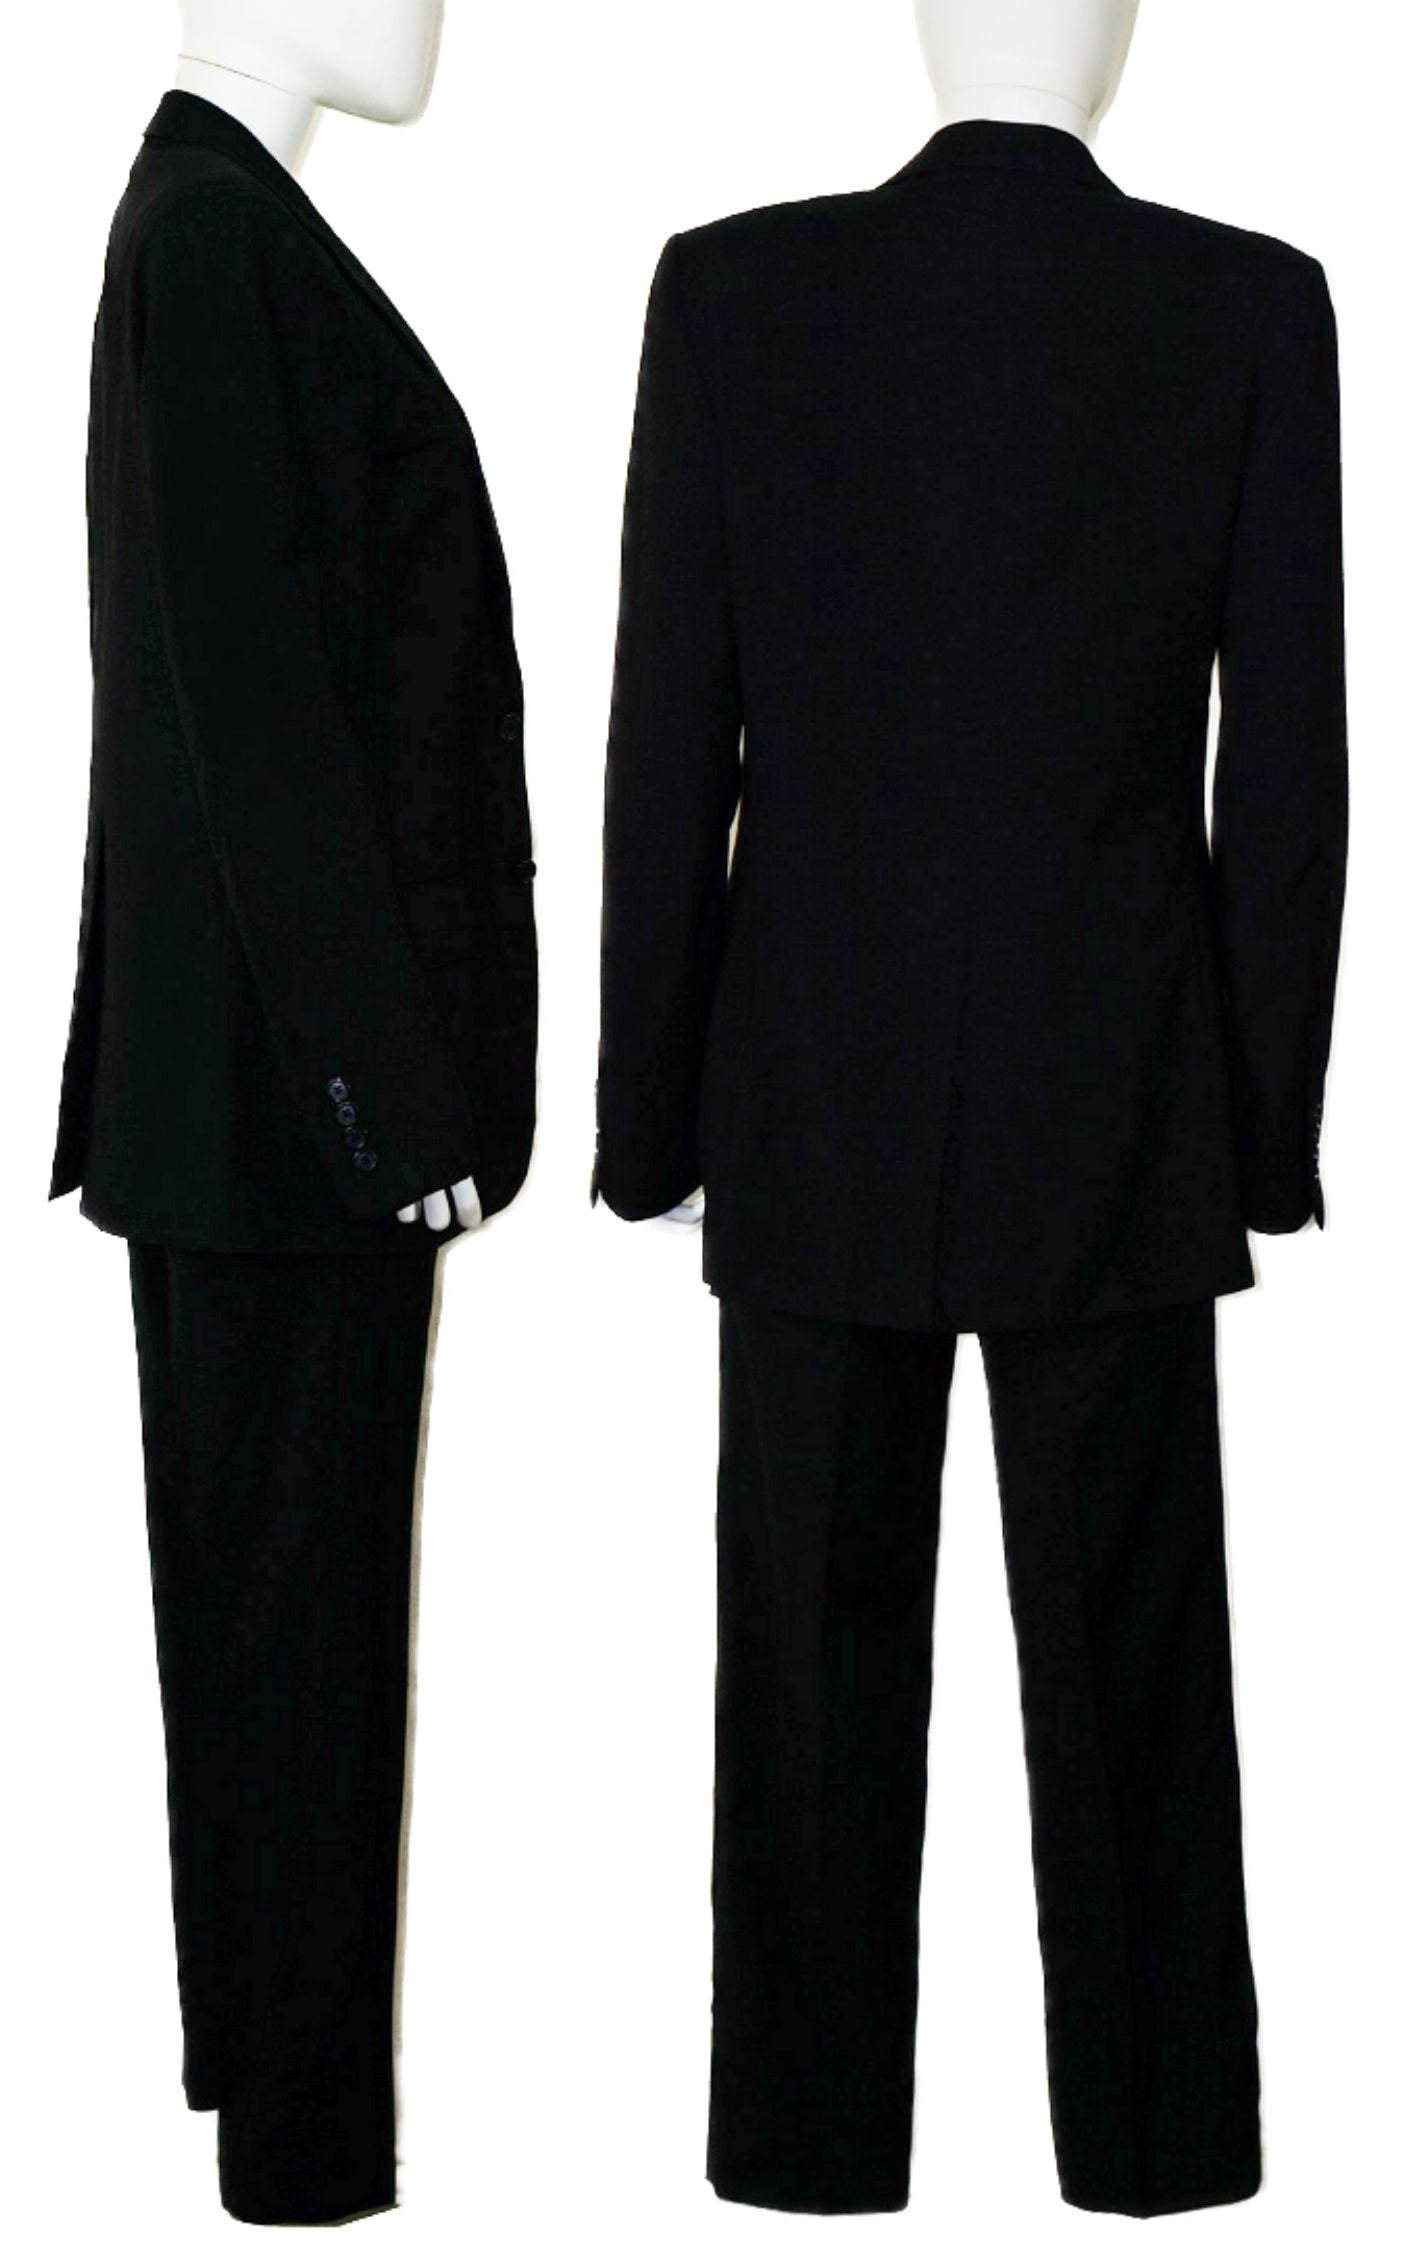 DIOR Homme Wool Men's Black 2-Button Blazer Pants Suit resellum